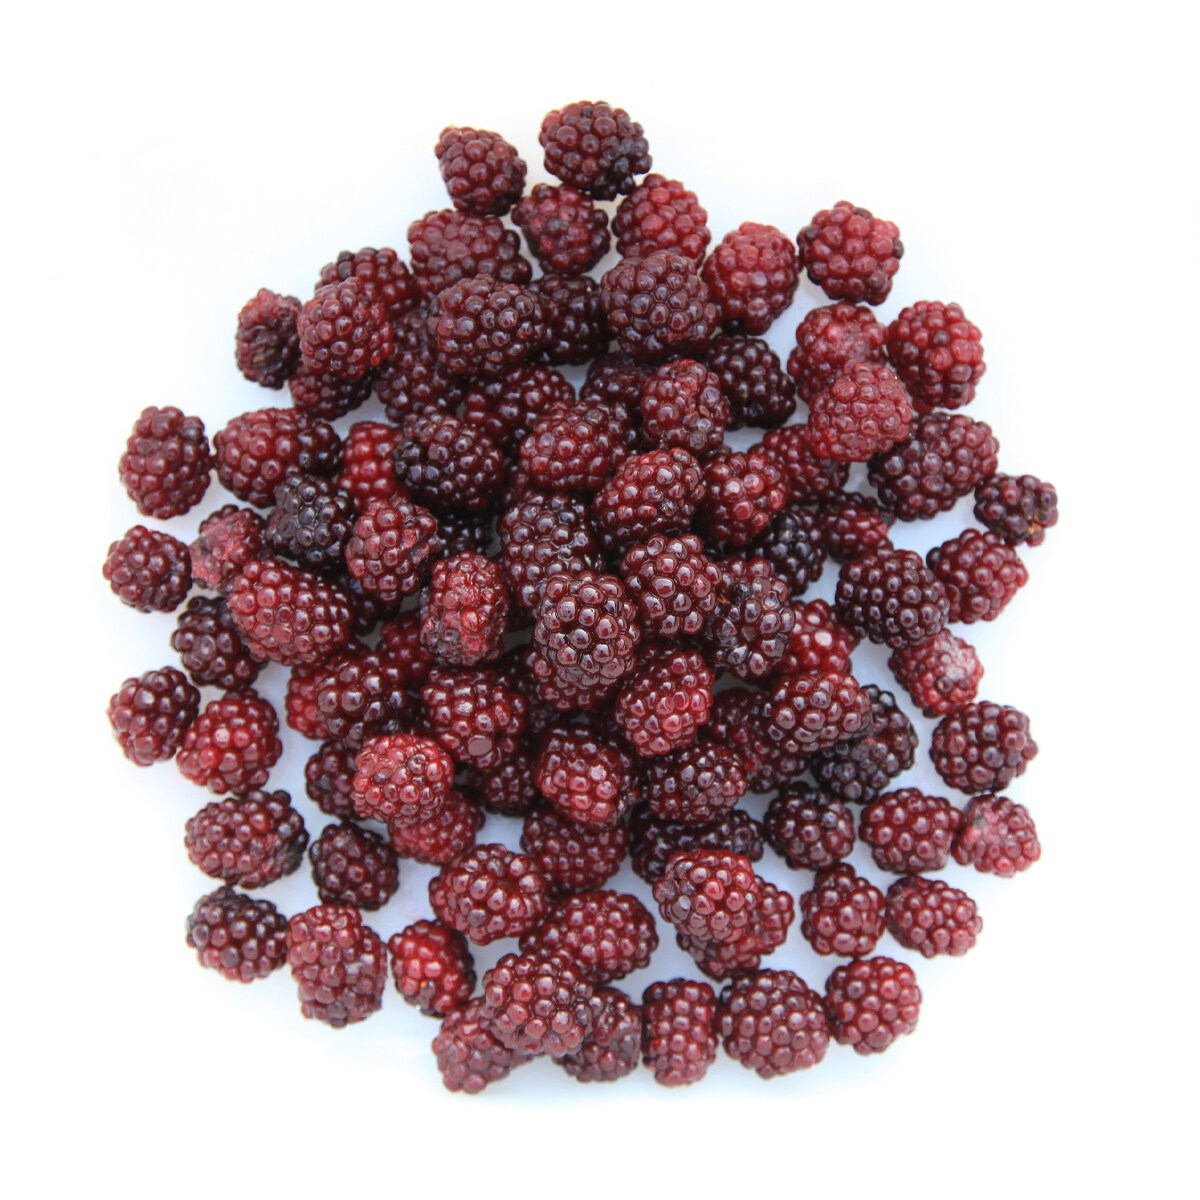 高質量的散裝冷凍水果黑莓價格每噸